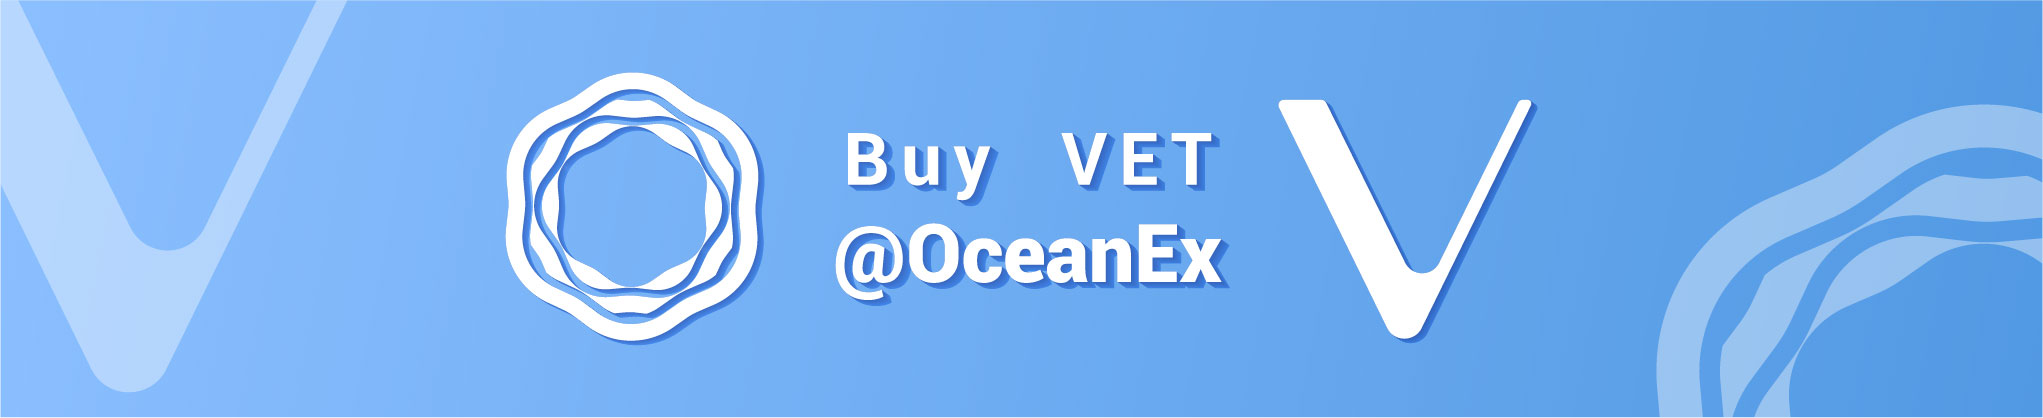 Buy VET at OceanEx